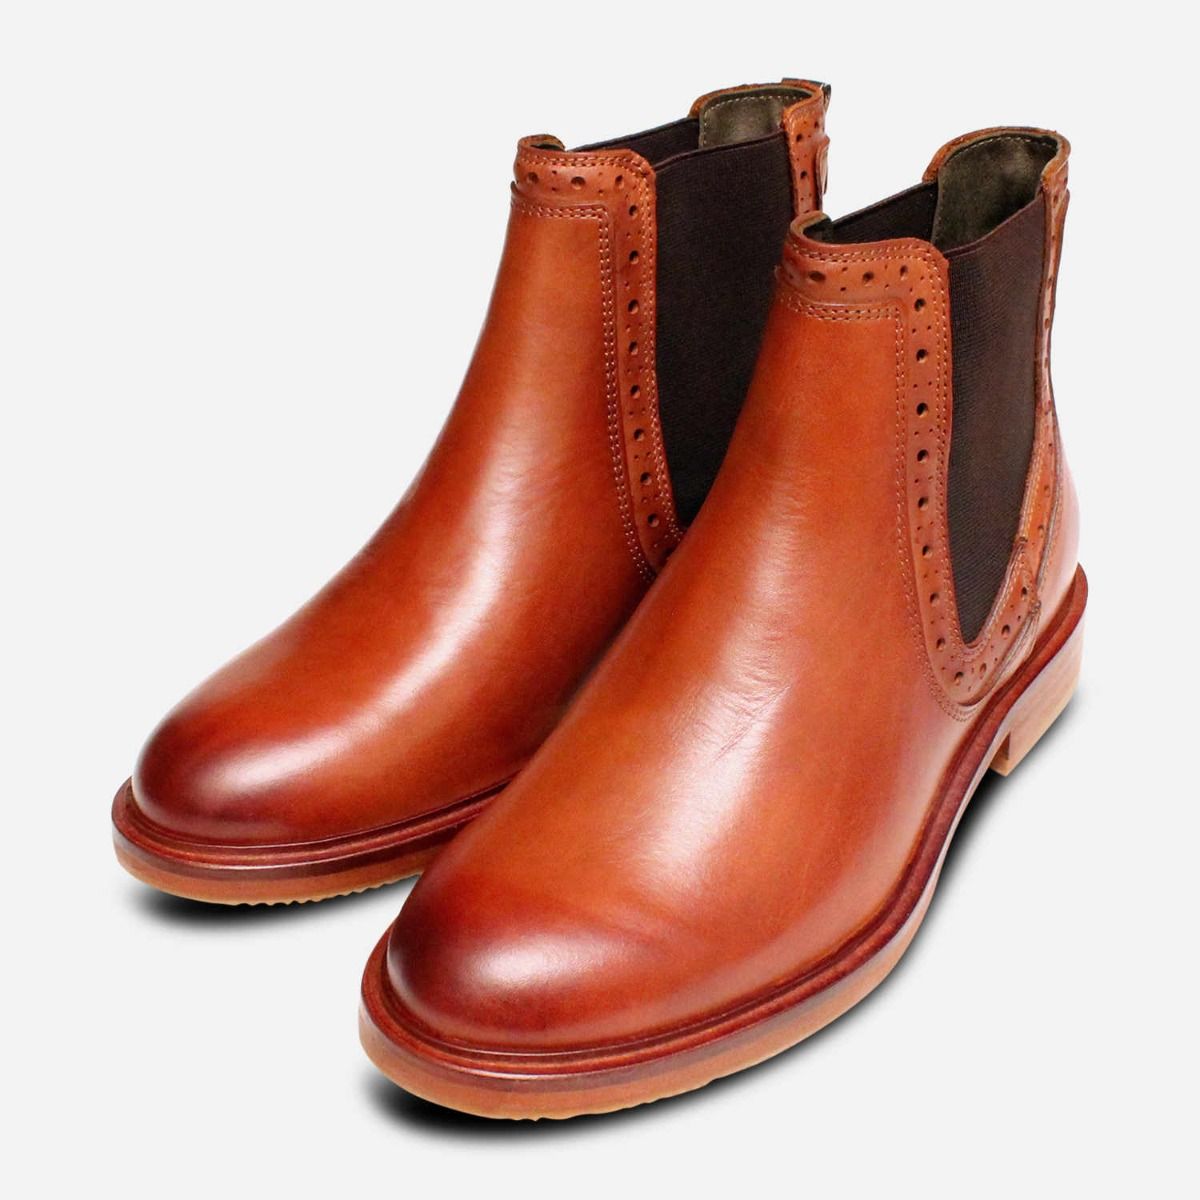 barbour chelsea boots sale